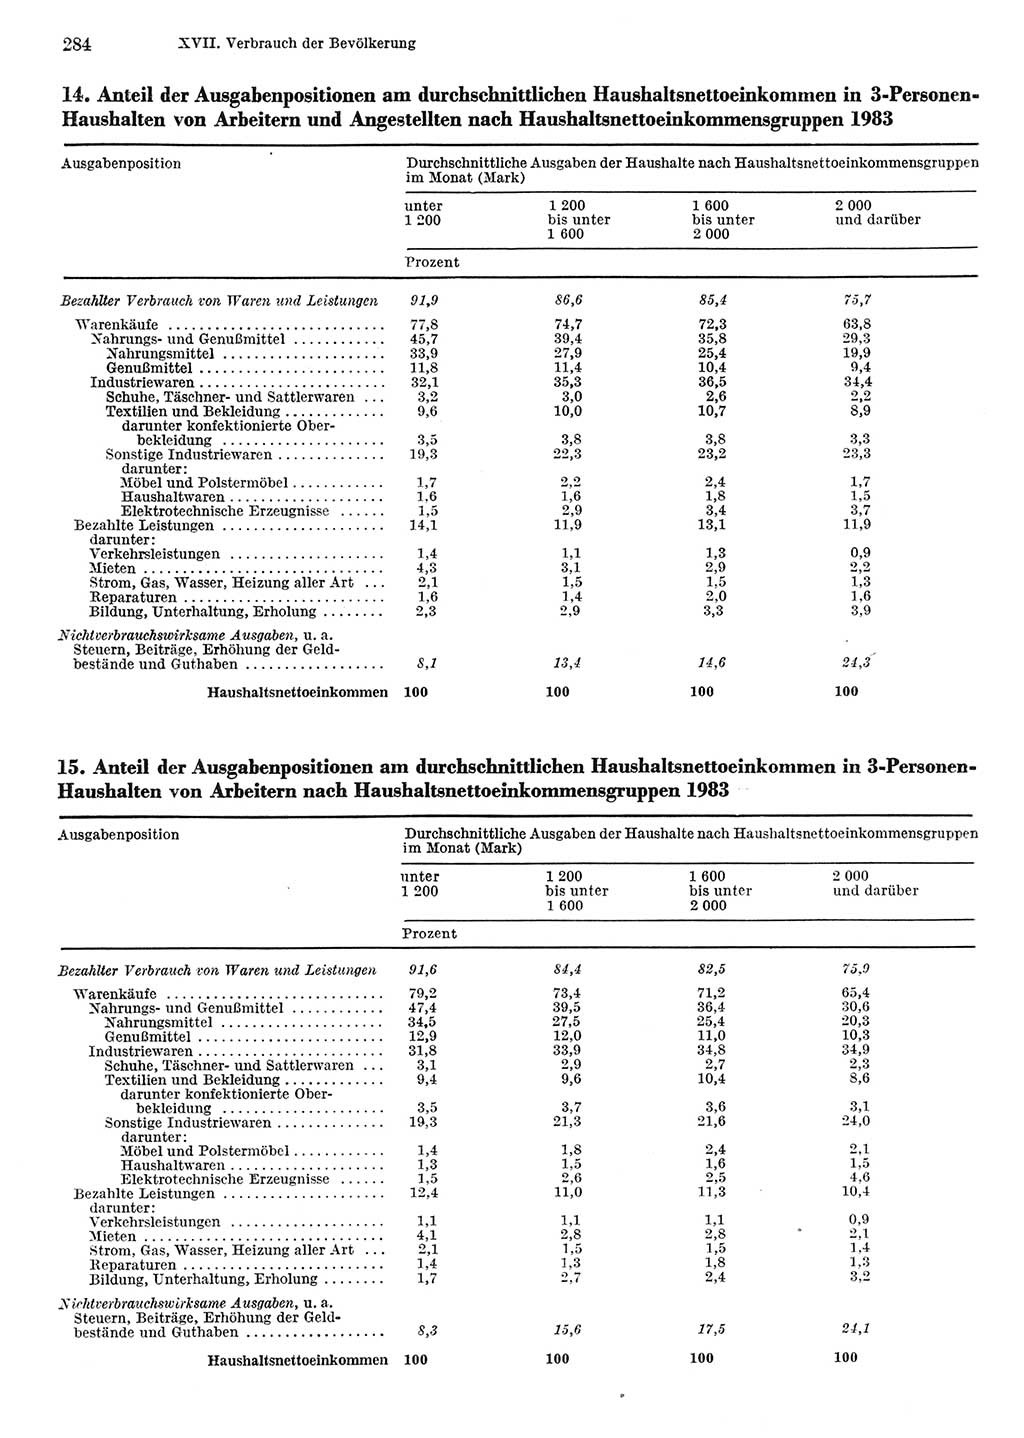 Statistisches Jahrbuch der Deutschen Demokratischen Republik (DDR) 1984, Seite 284 (Stat. Jb. DDR 1984, S. 284)